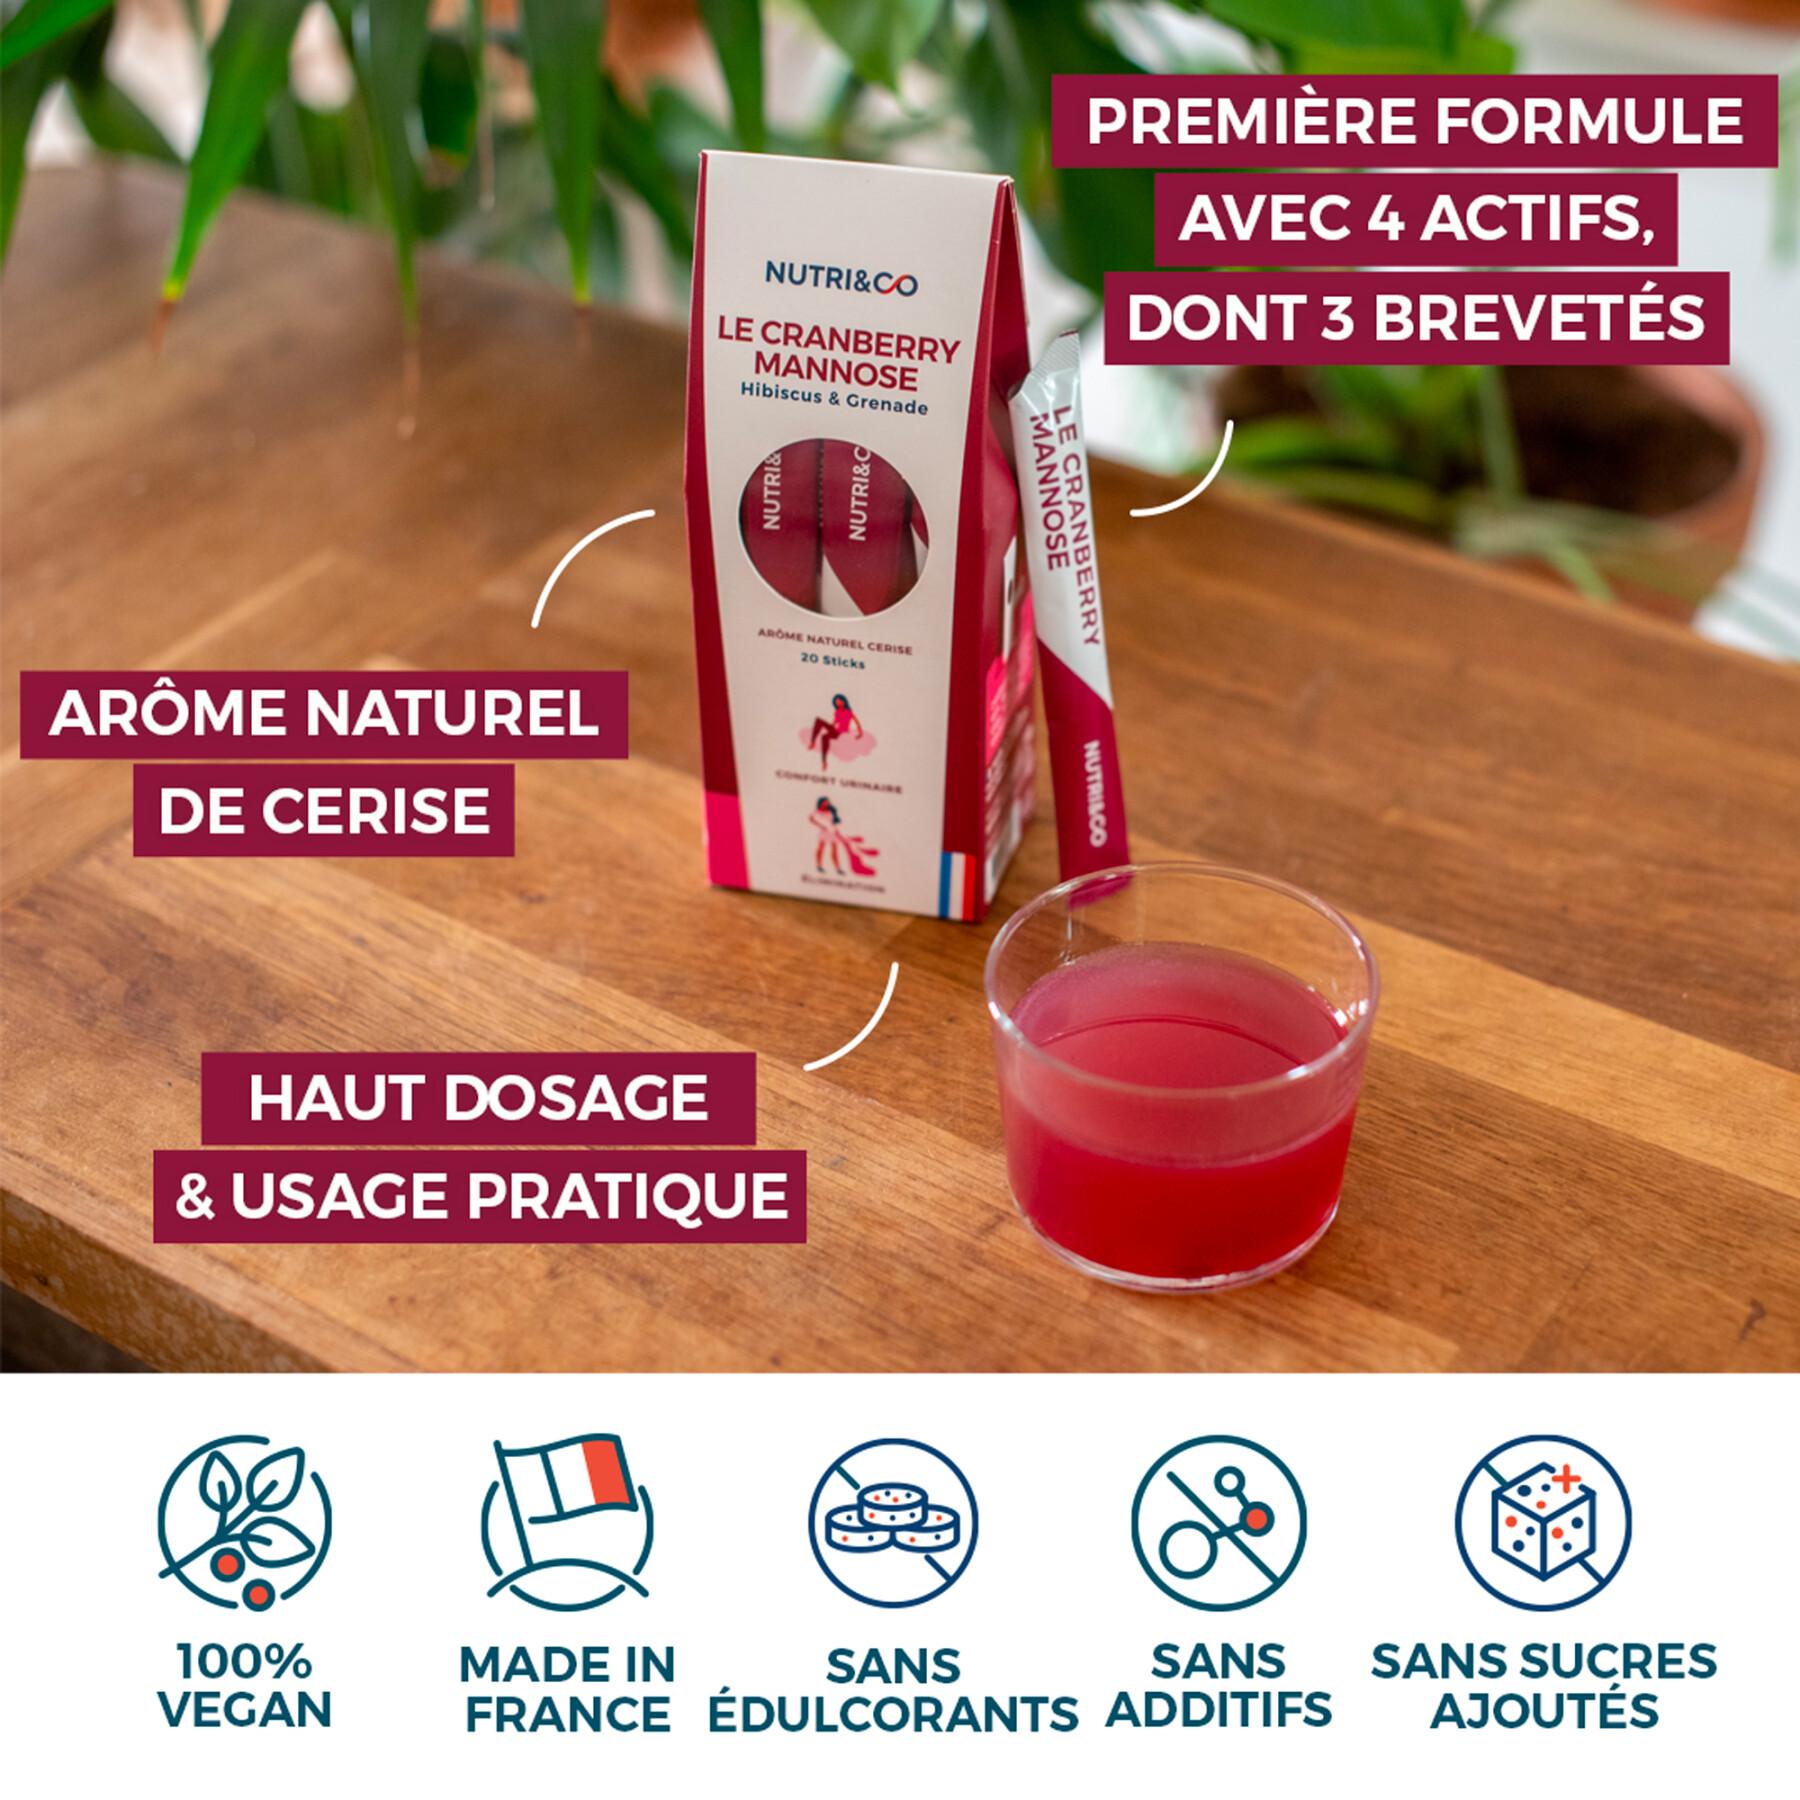 Suplemento alimentar para conforto urinário Nutri&Co Le Cranberry Mannose - 20 sticks